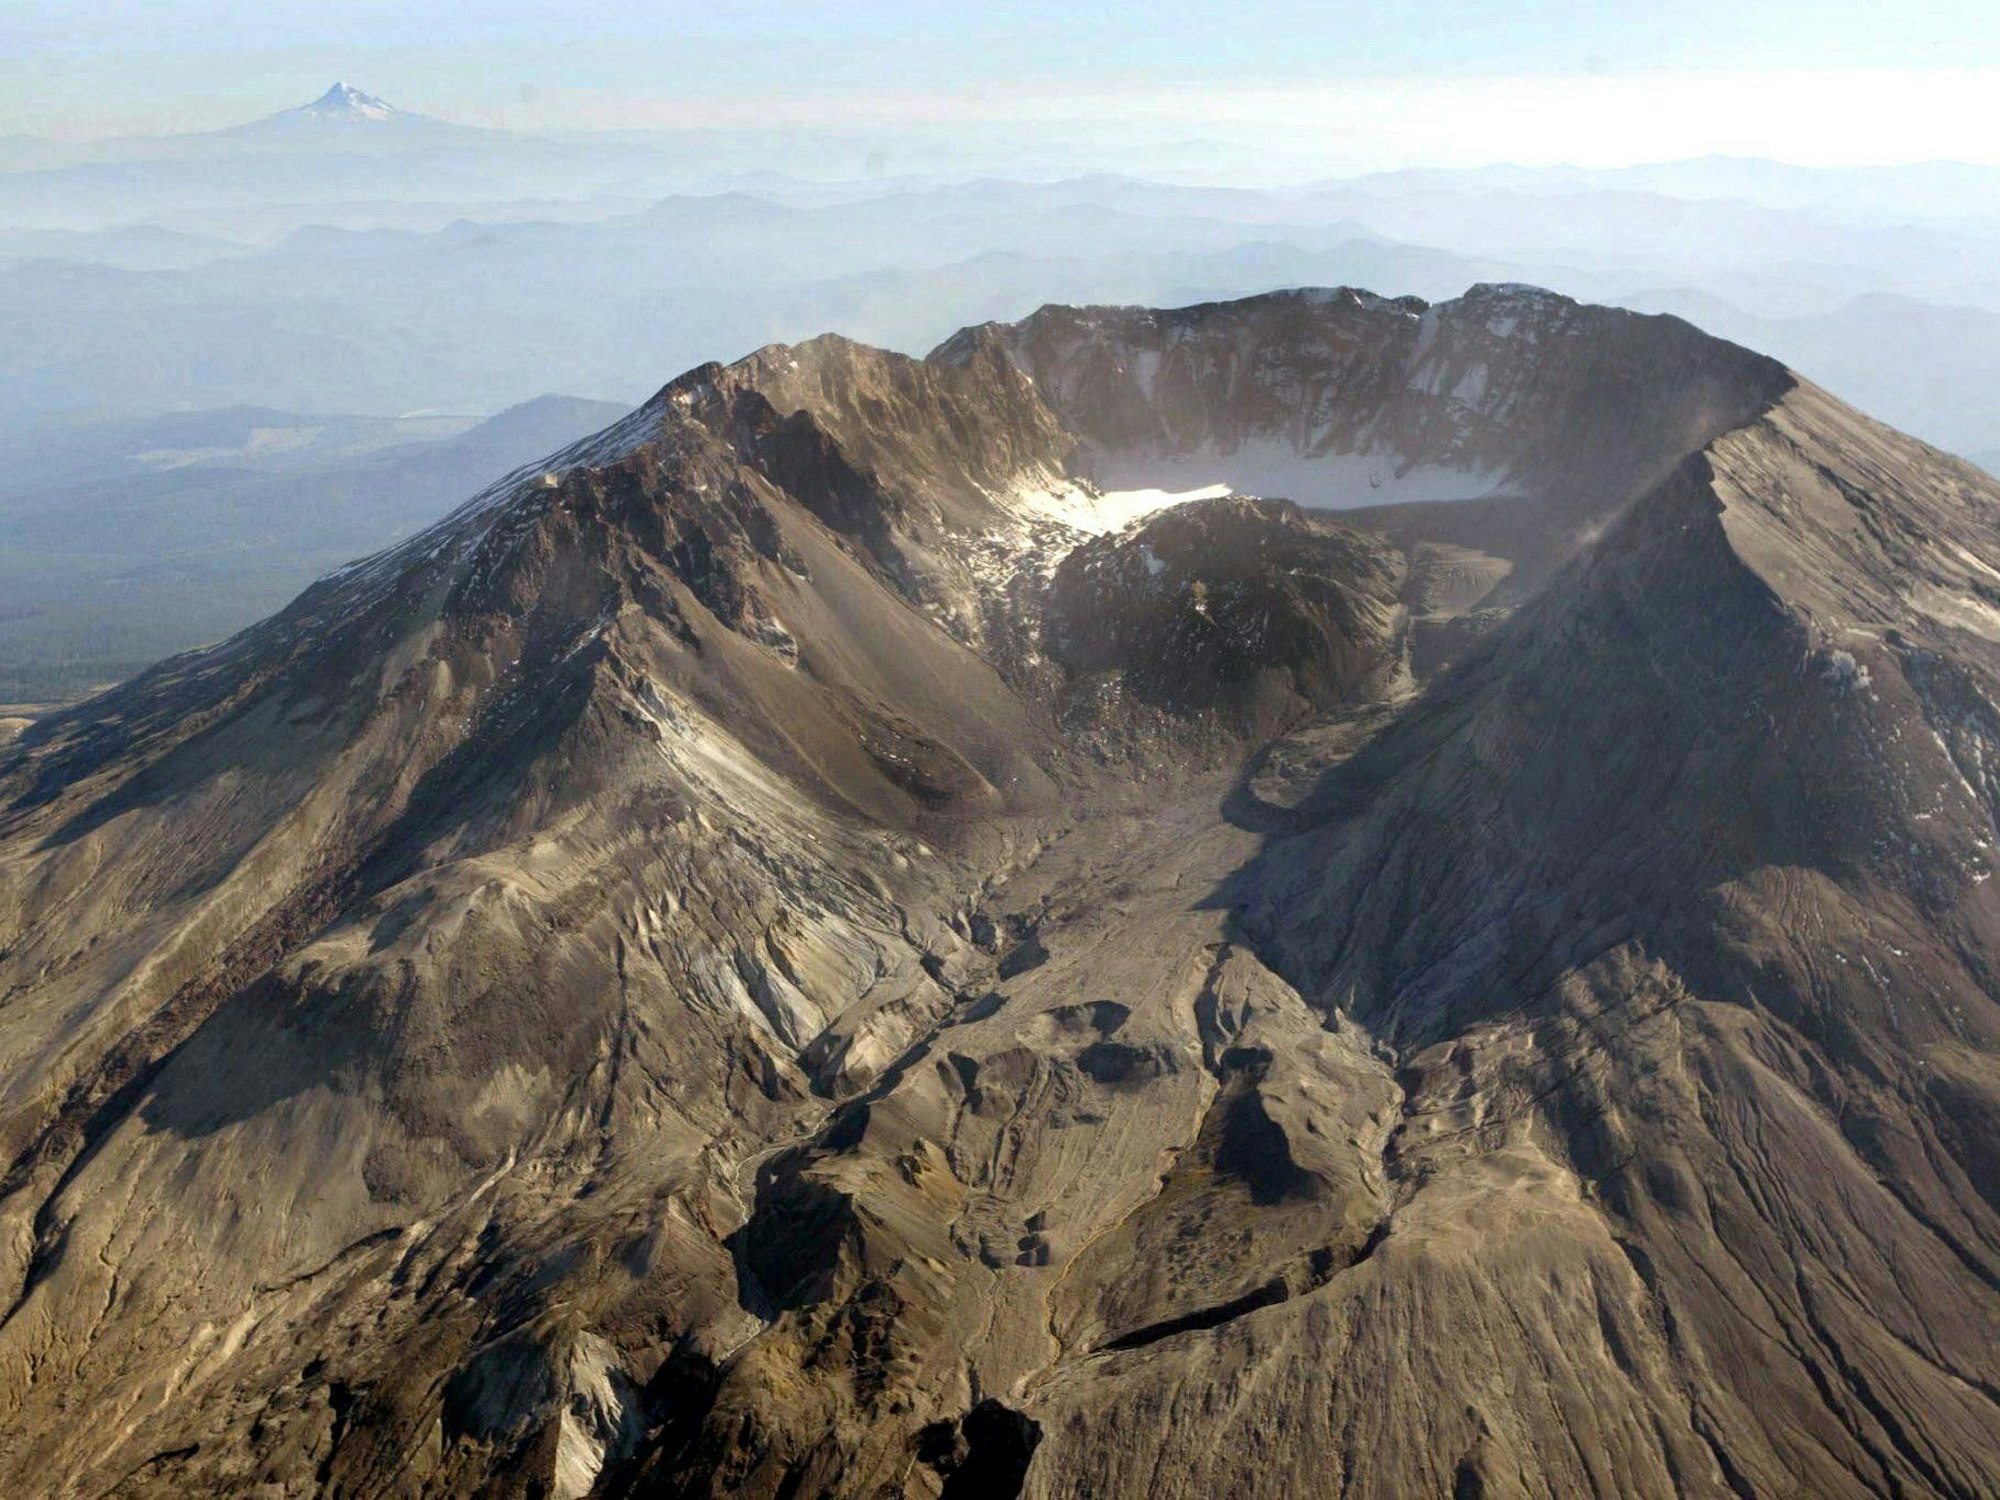 Der Mount St. Helens im US-Bundesstaat Washington gehört zur Kaskadenkette, einem vulkanischen Gebirgszug, der sich entlang der Westküste Nordamerikas erstreckt und einen Teil des pazifischen Feuerrings darstellt.